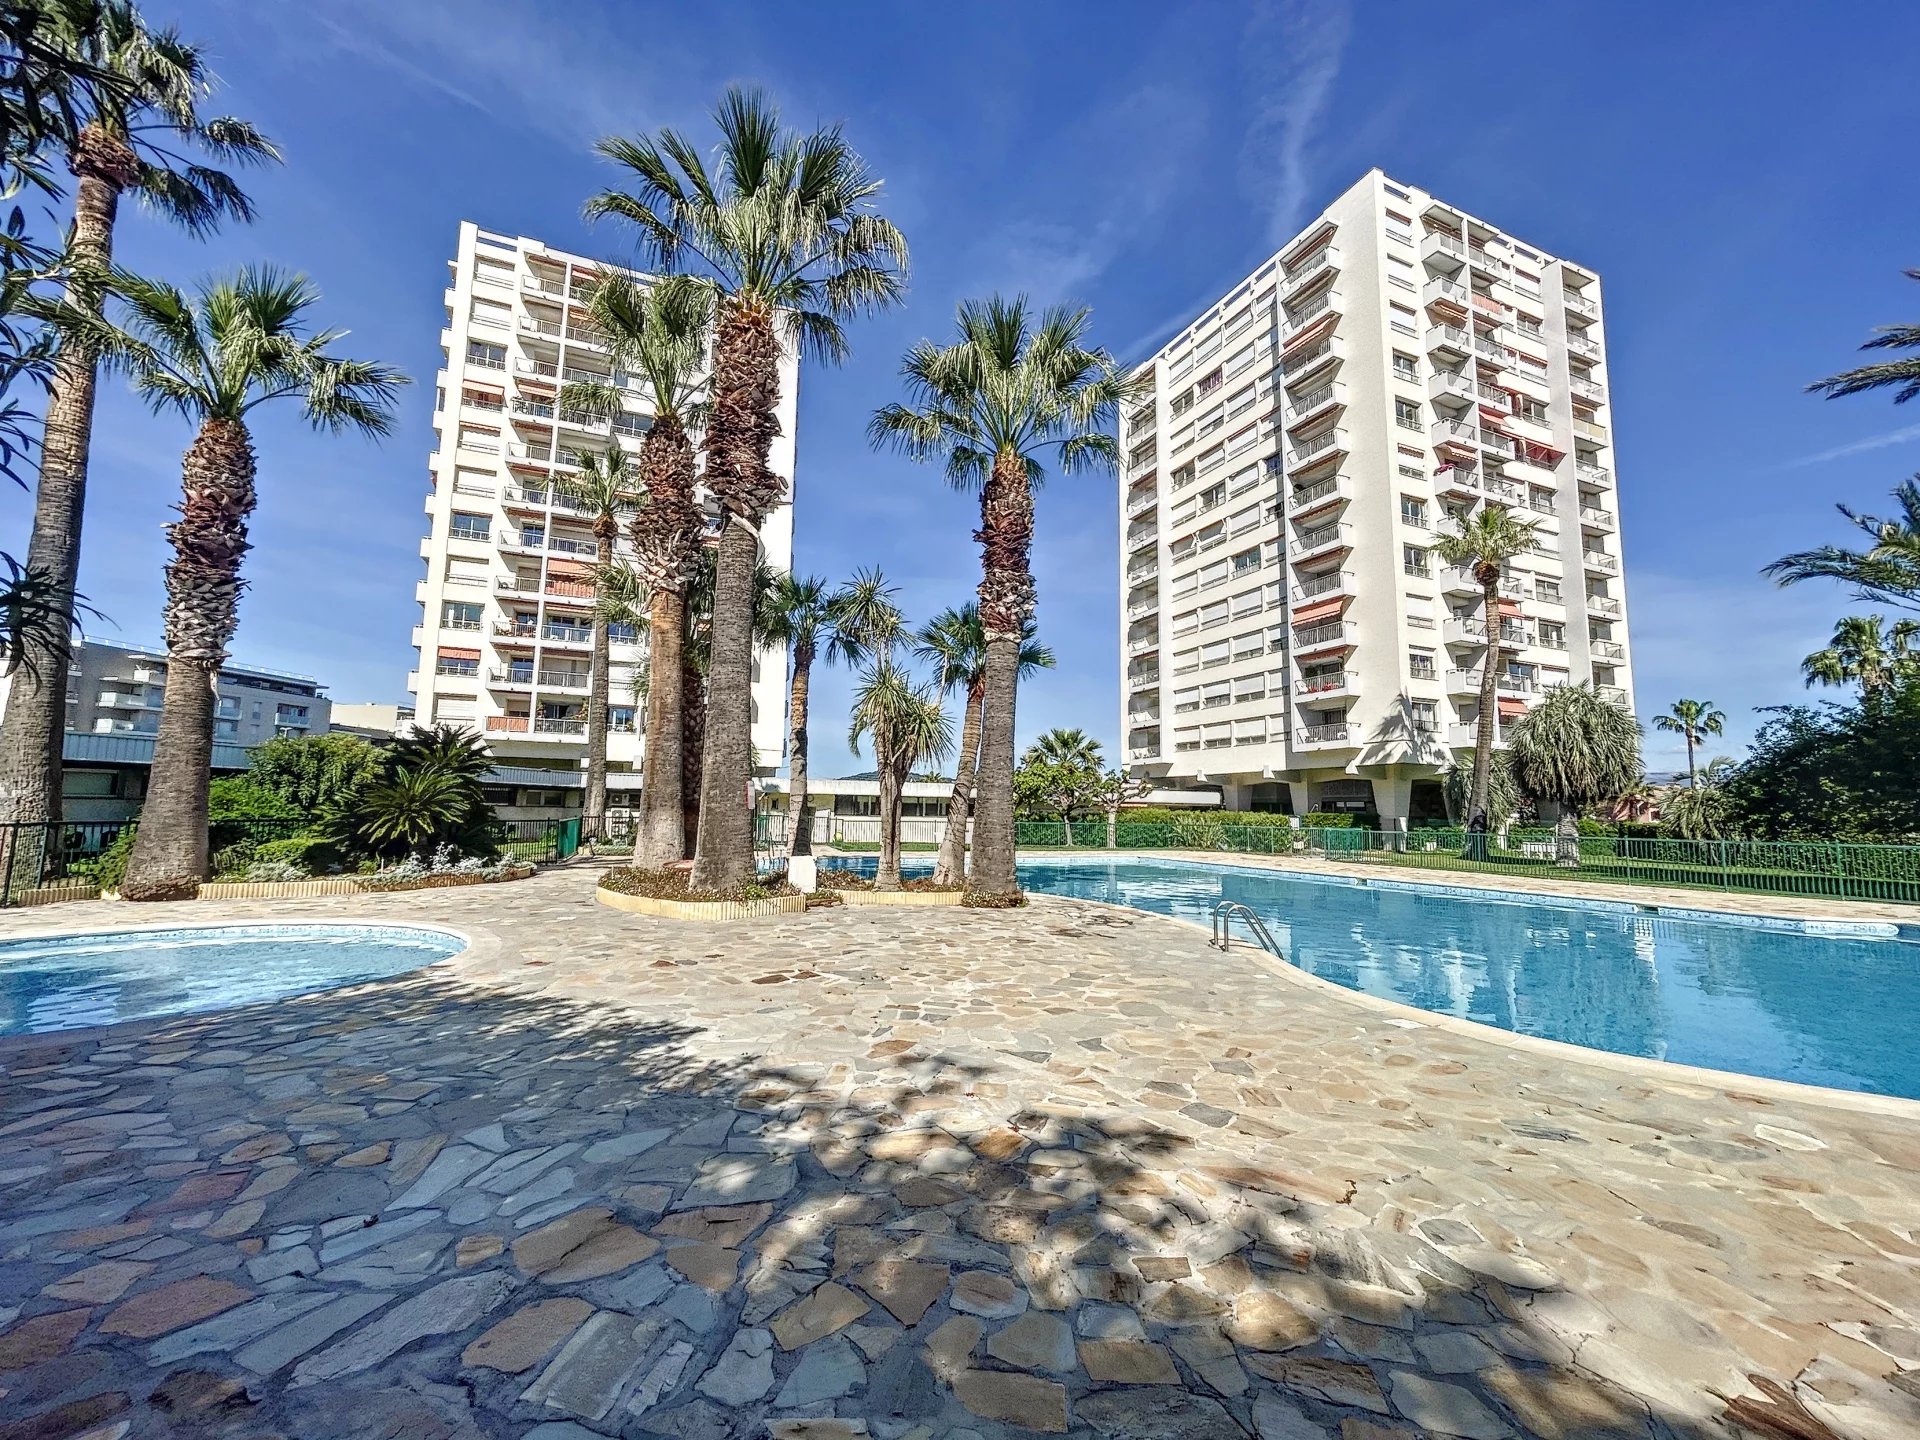 A vendre, Antibes proche centre, appartement 3 pièces d'angle, avec terrasse et belle vue dégagée mer, collines et montagnes